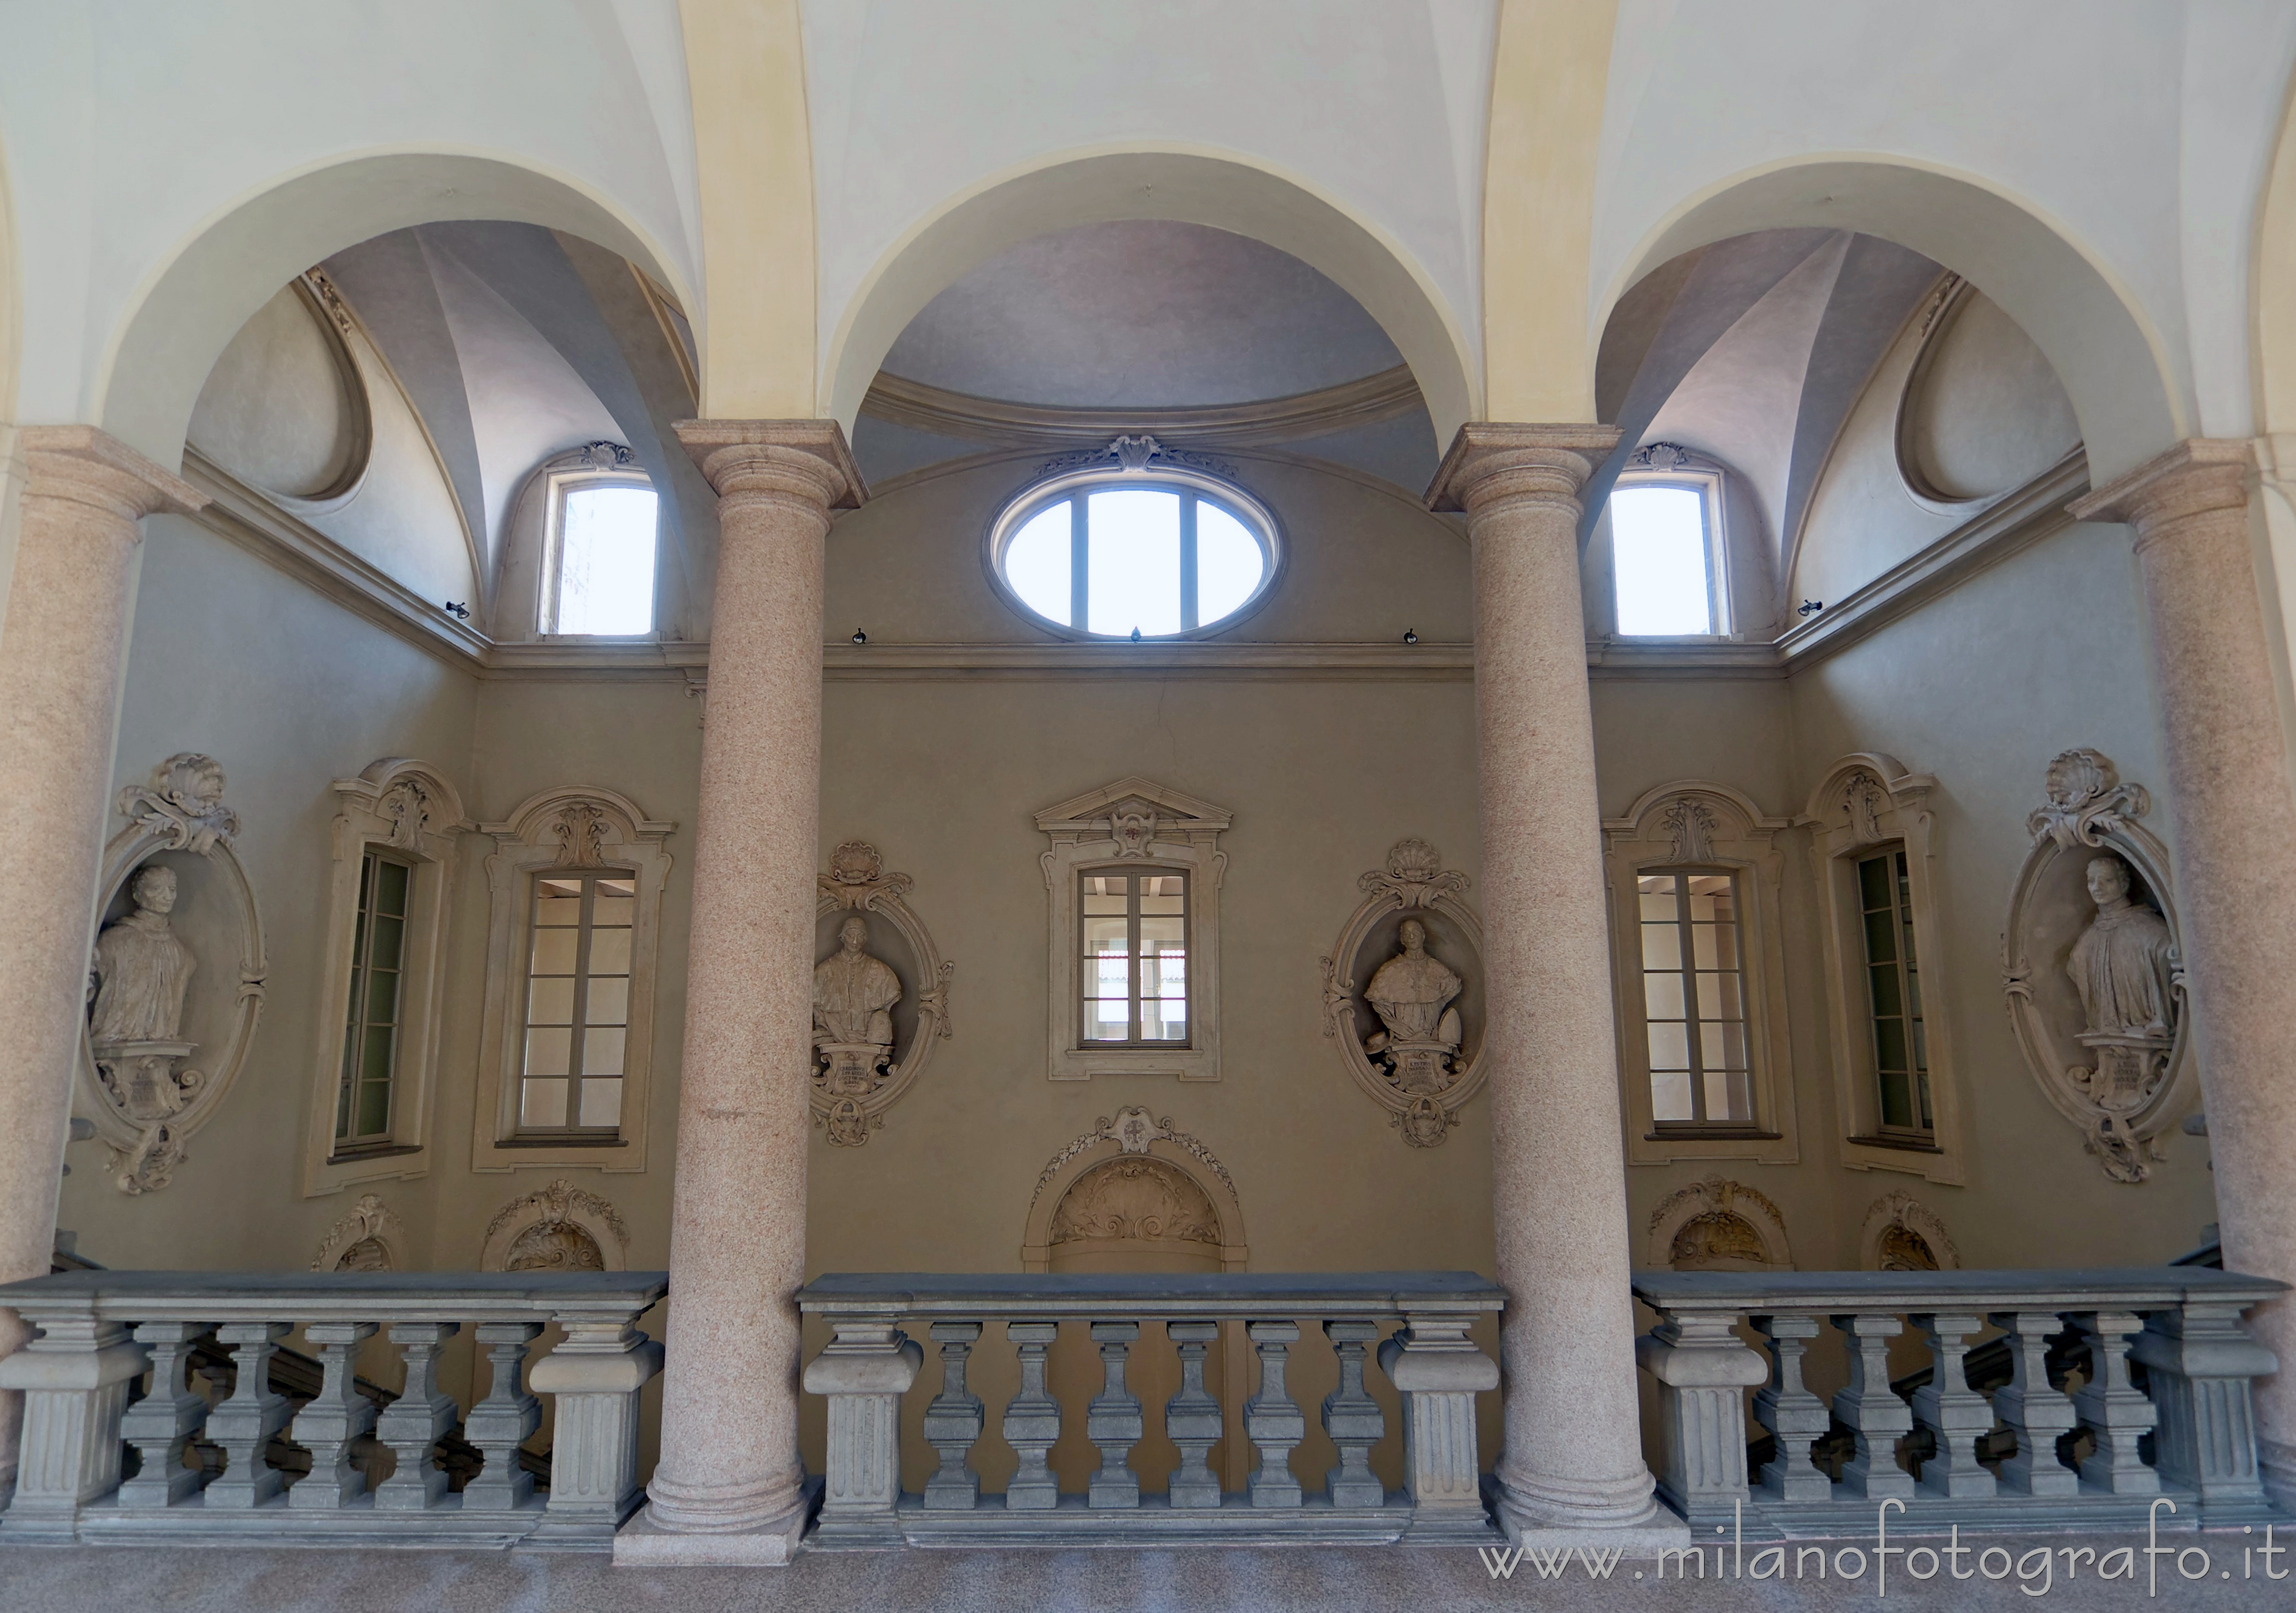 Milano: Atrio di ingresso dei Chiostri di San Simpliciano visto dal primo piano - Milano